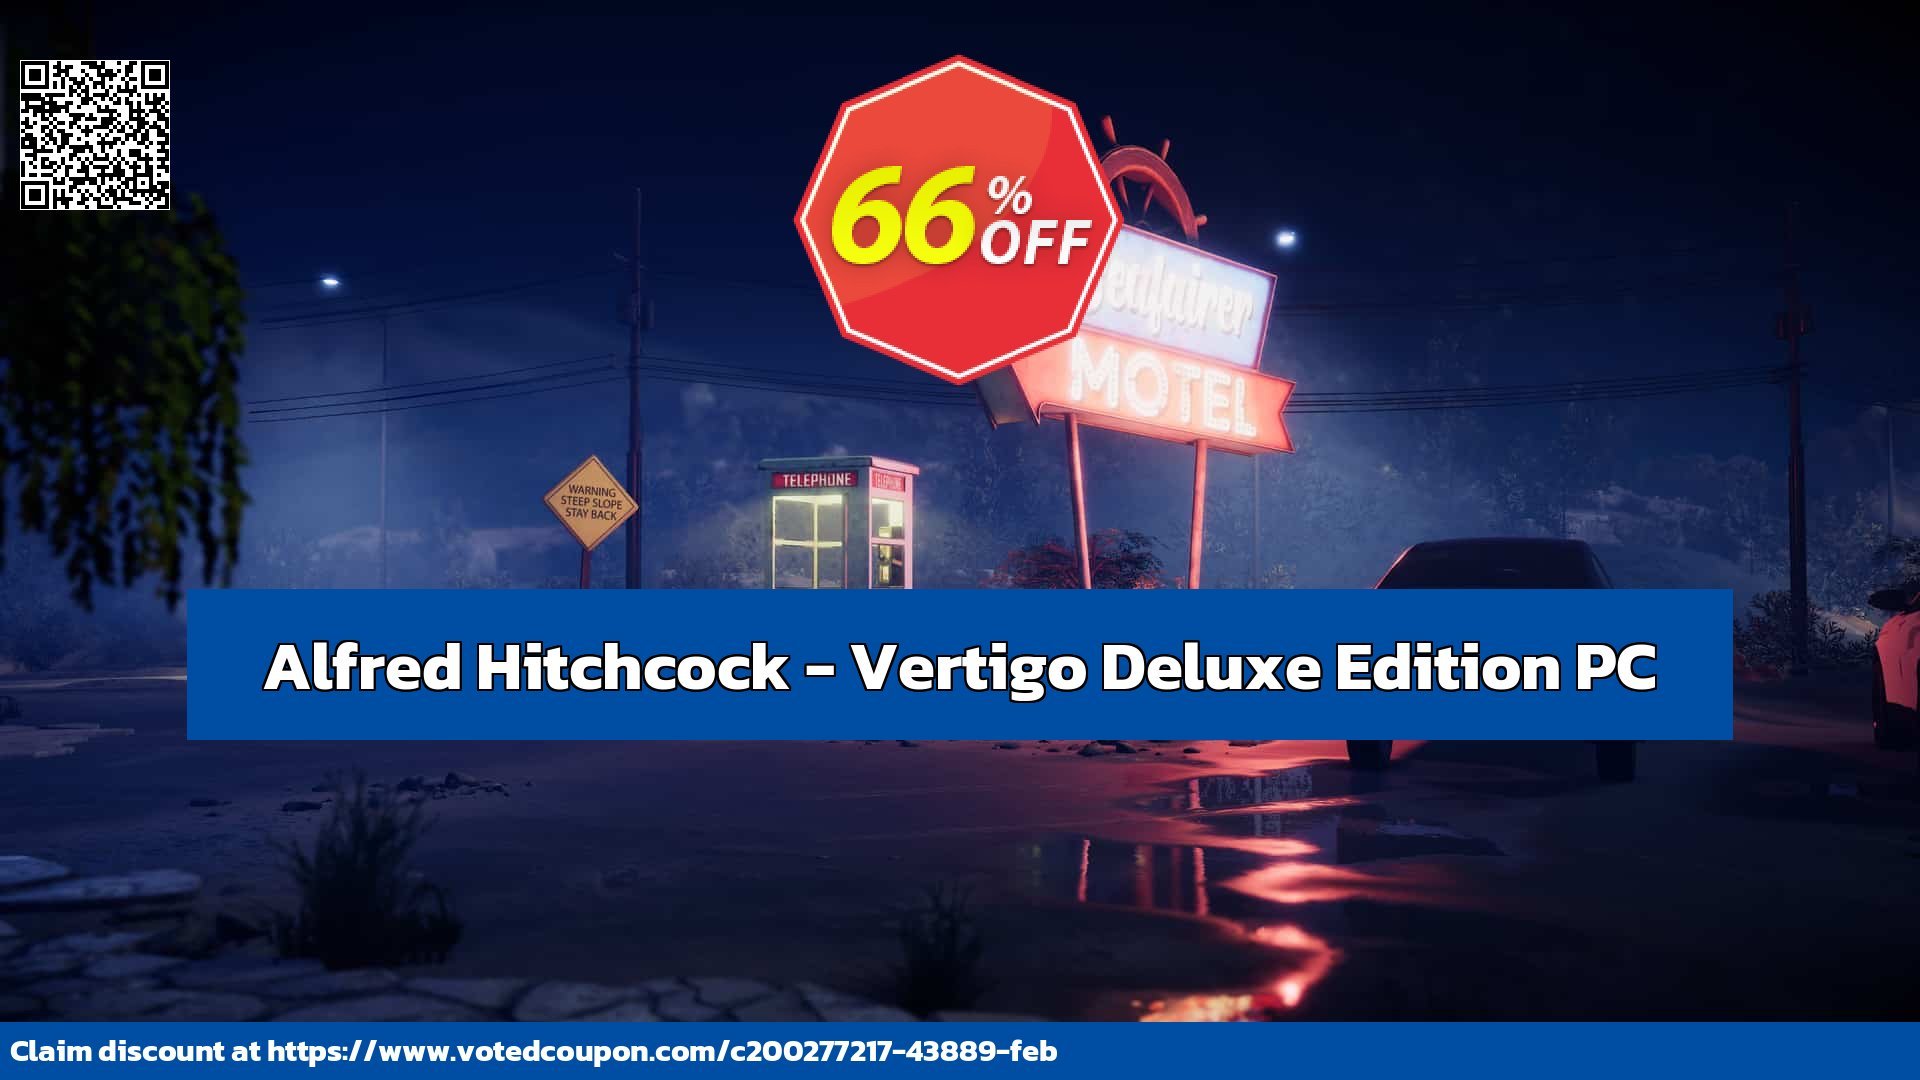 Alfred Hitchcock - Vertigo Deluxe Edition PC Coupon, discount Alfred Hitchcock - Vertigo Deluxe Edition PC Deal CDkeys. Promotion: Alfred Hitchcock - Vertigo Deluxe Edition PC Exclusive Sale offer